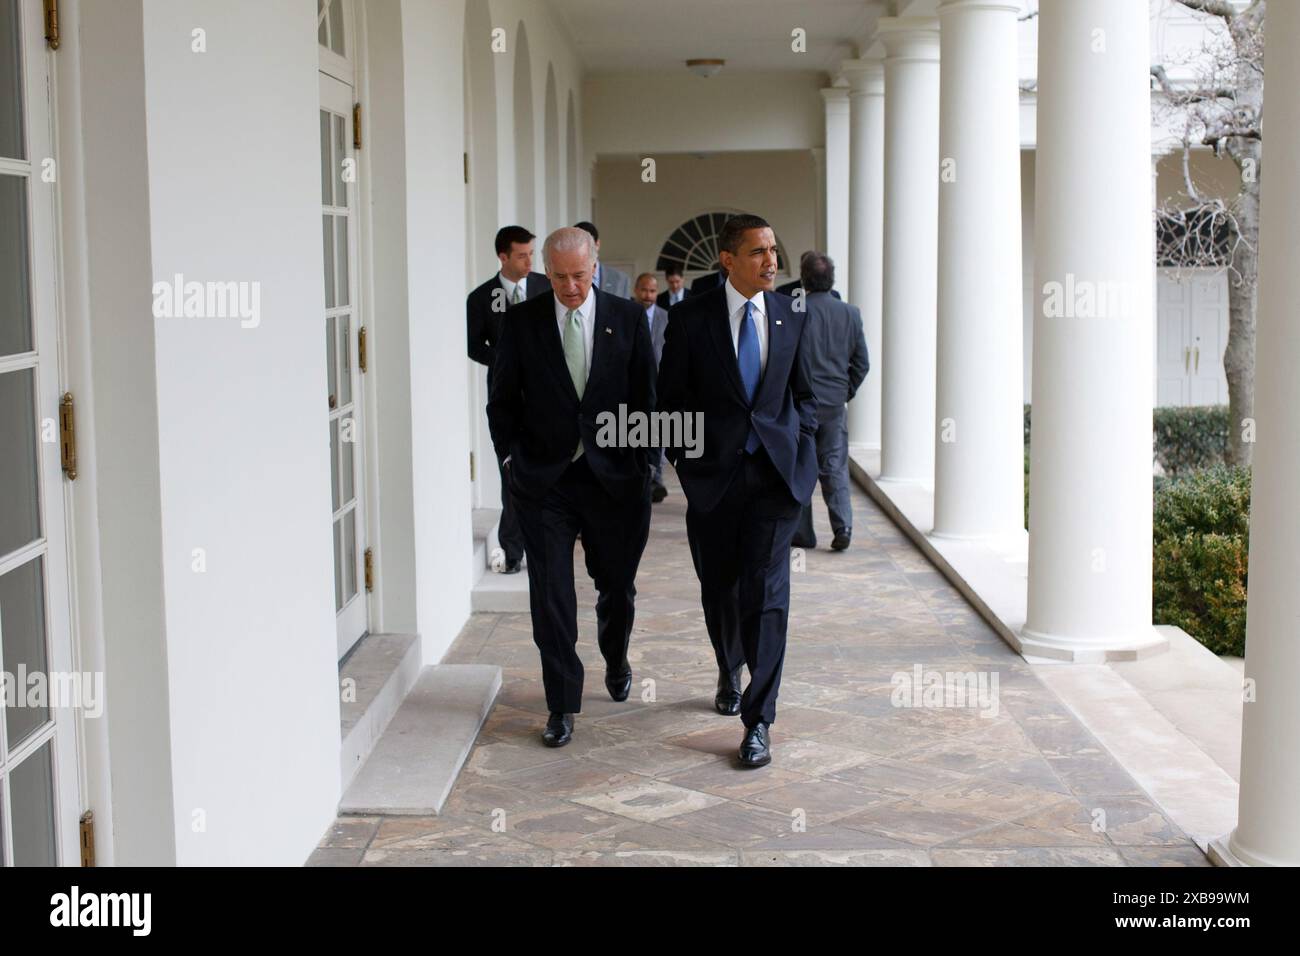 Präsident Barack Obama geht mit Vizepräsident Joe Biden im Weißen Haus, 3. Februar 2009 - Fotograf des Weißen Hauses Stockfoto